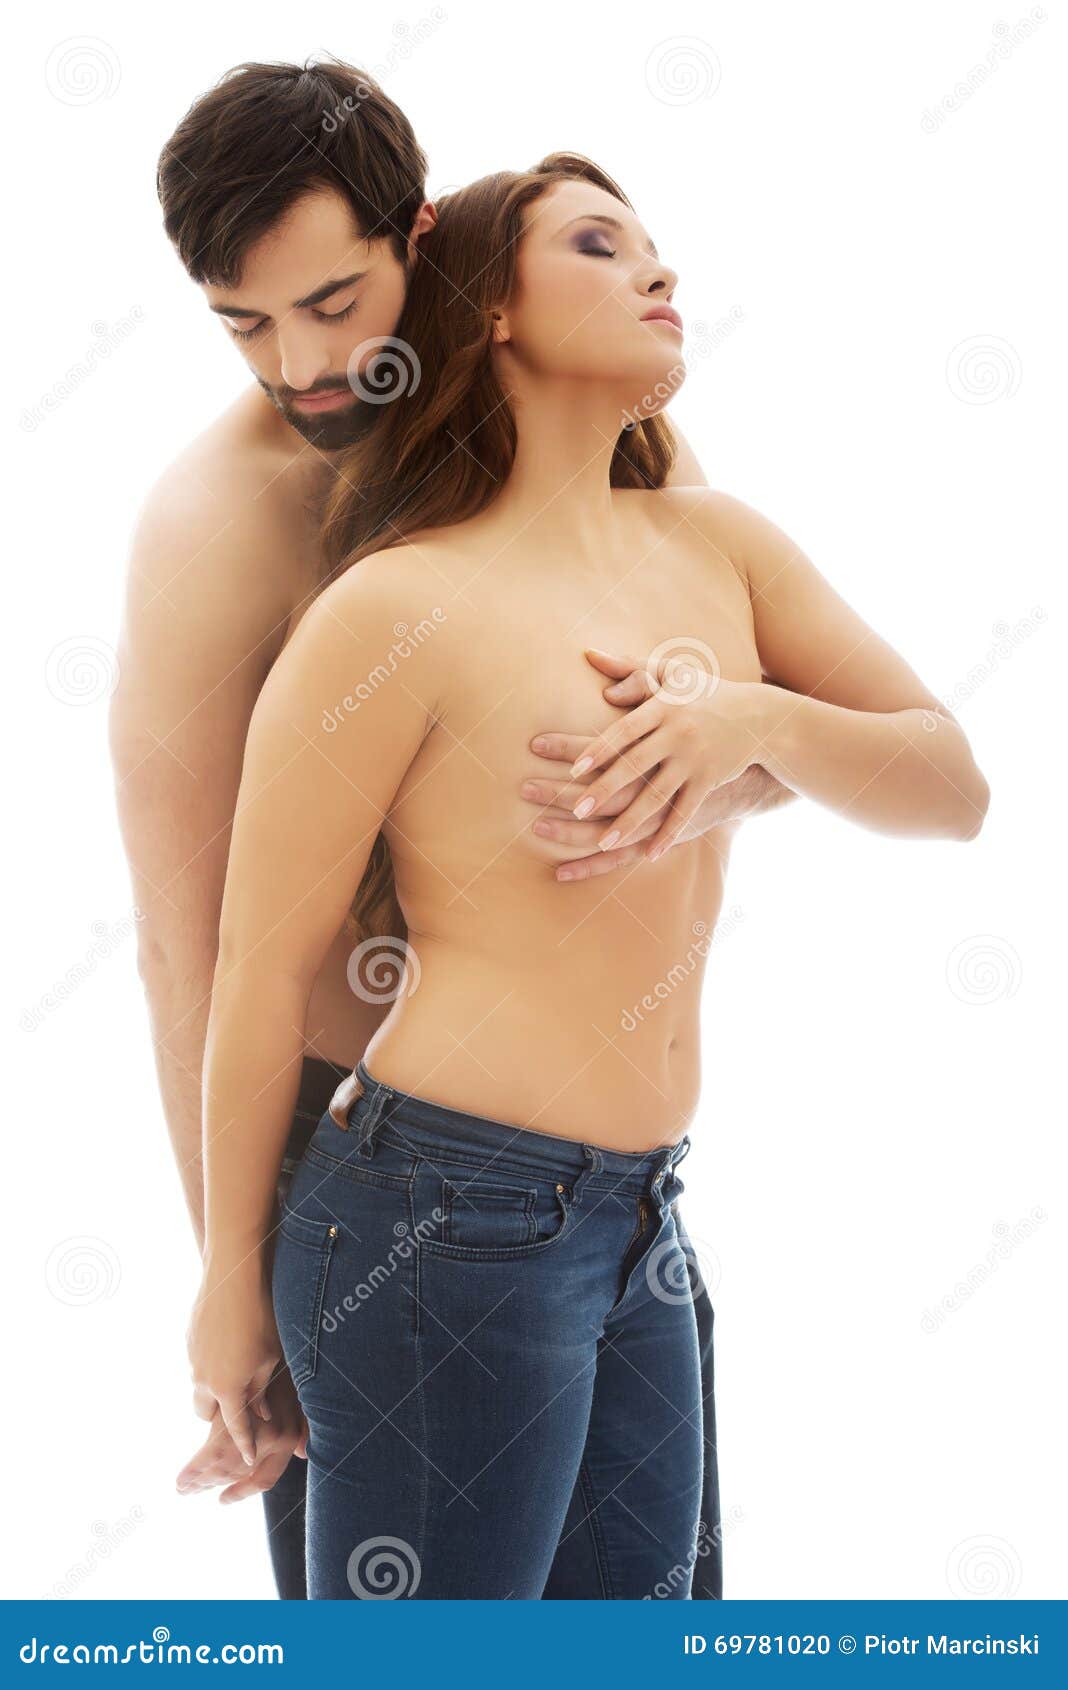 Men kissing women breast